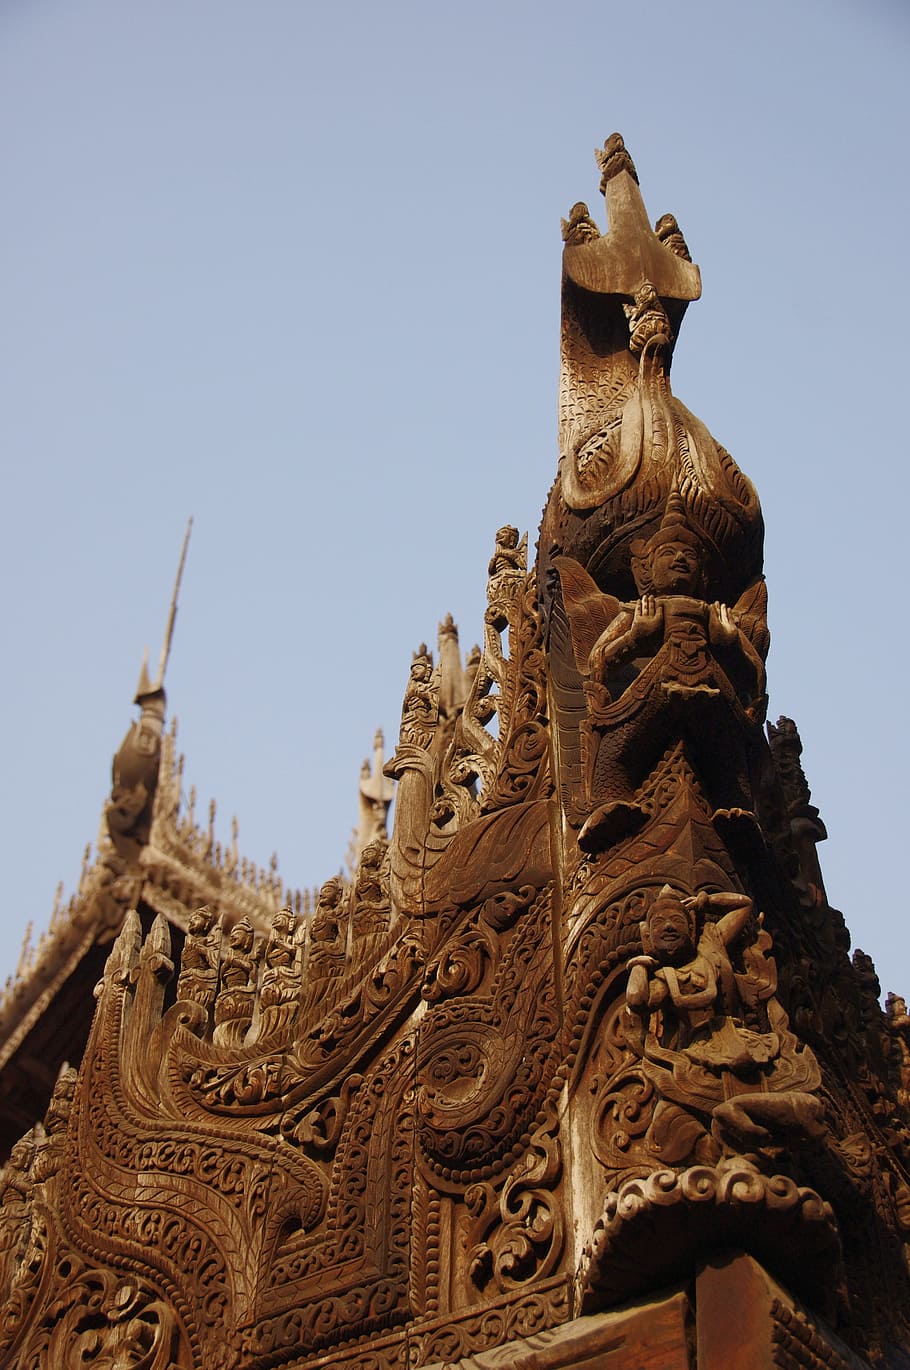 nga phe kyaung monastery, myanmar, burma, mandalay, building, HD wallpaper